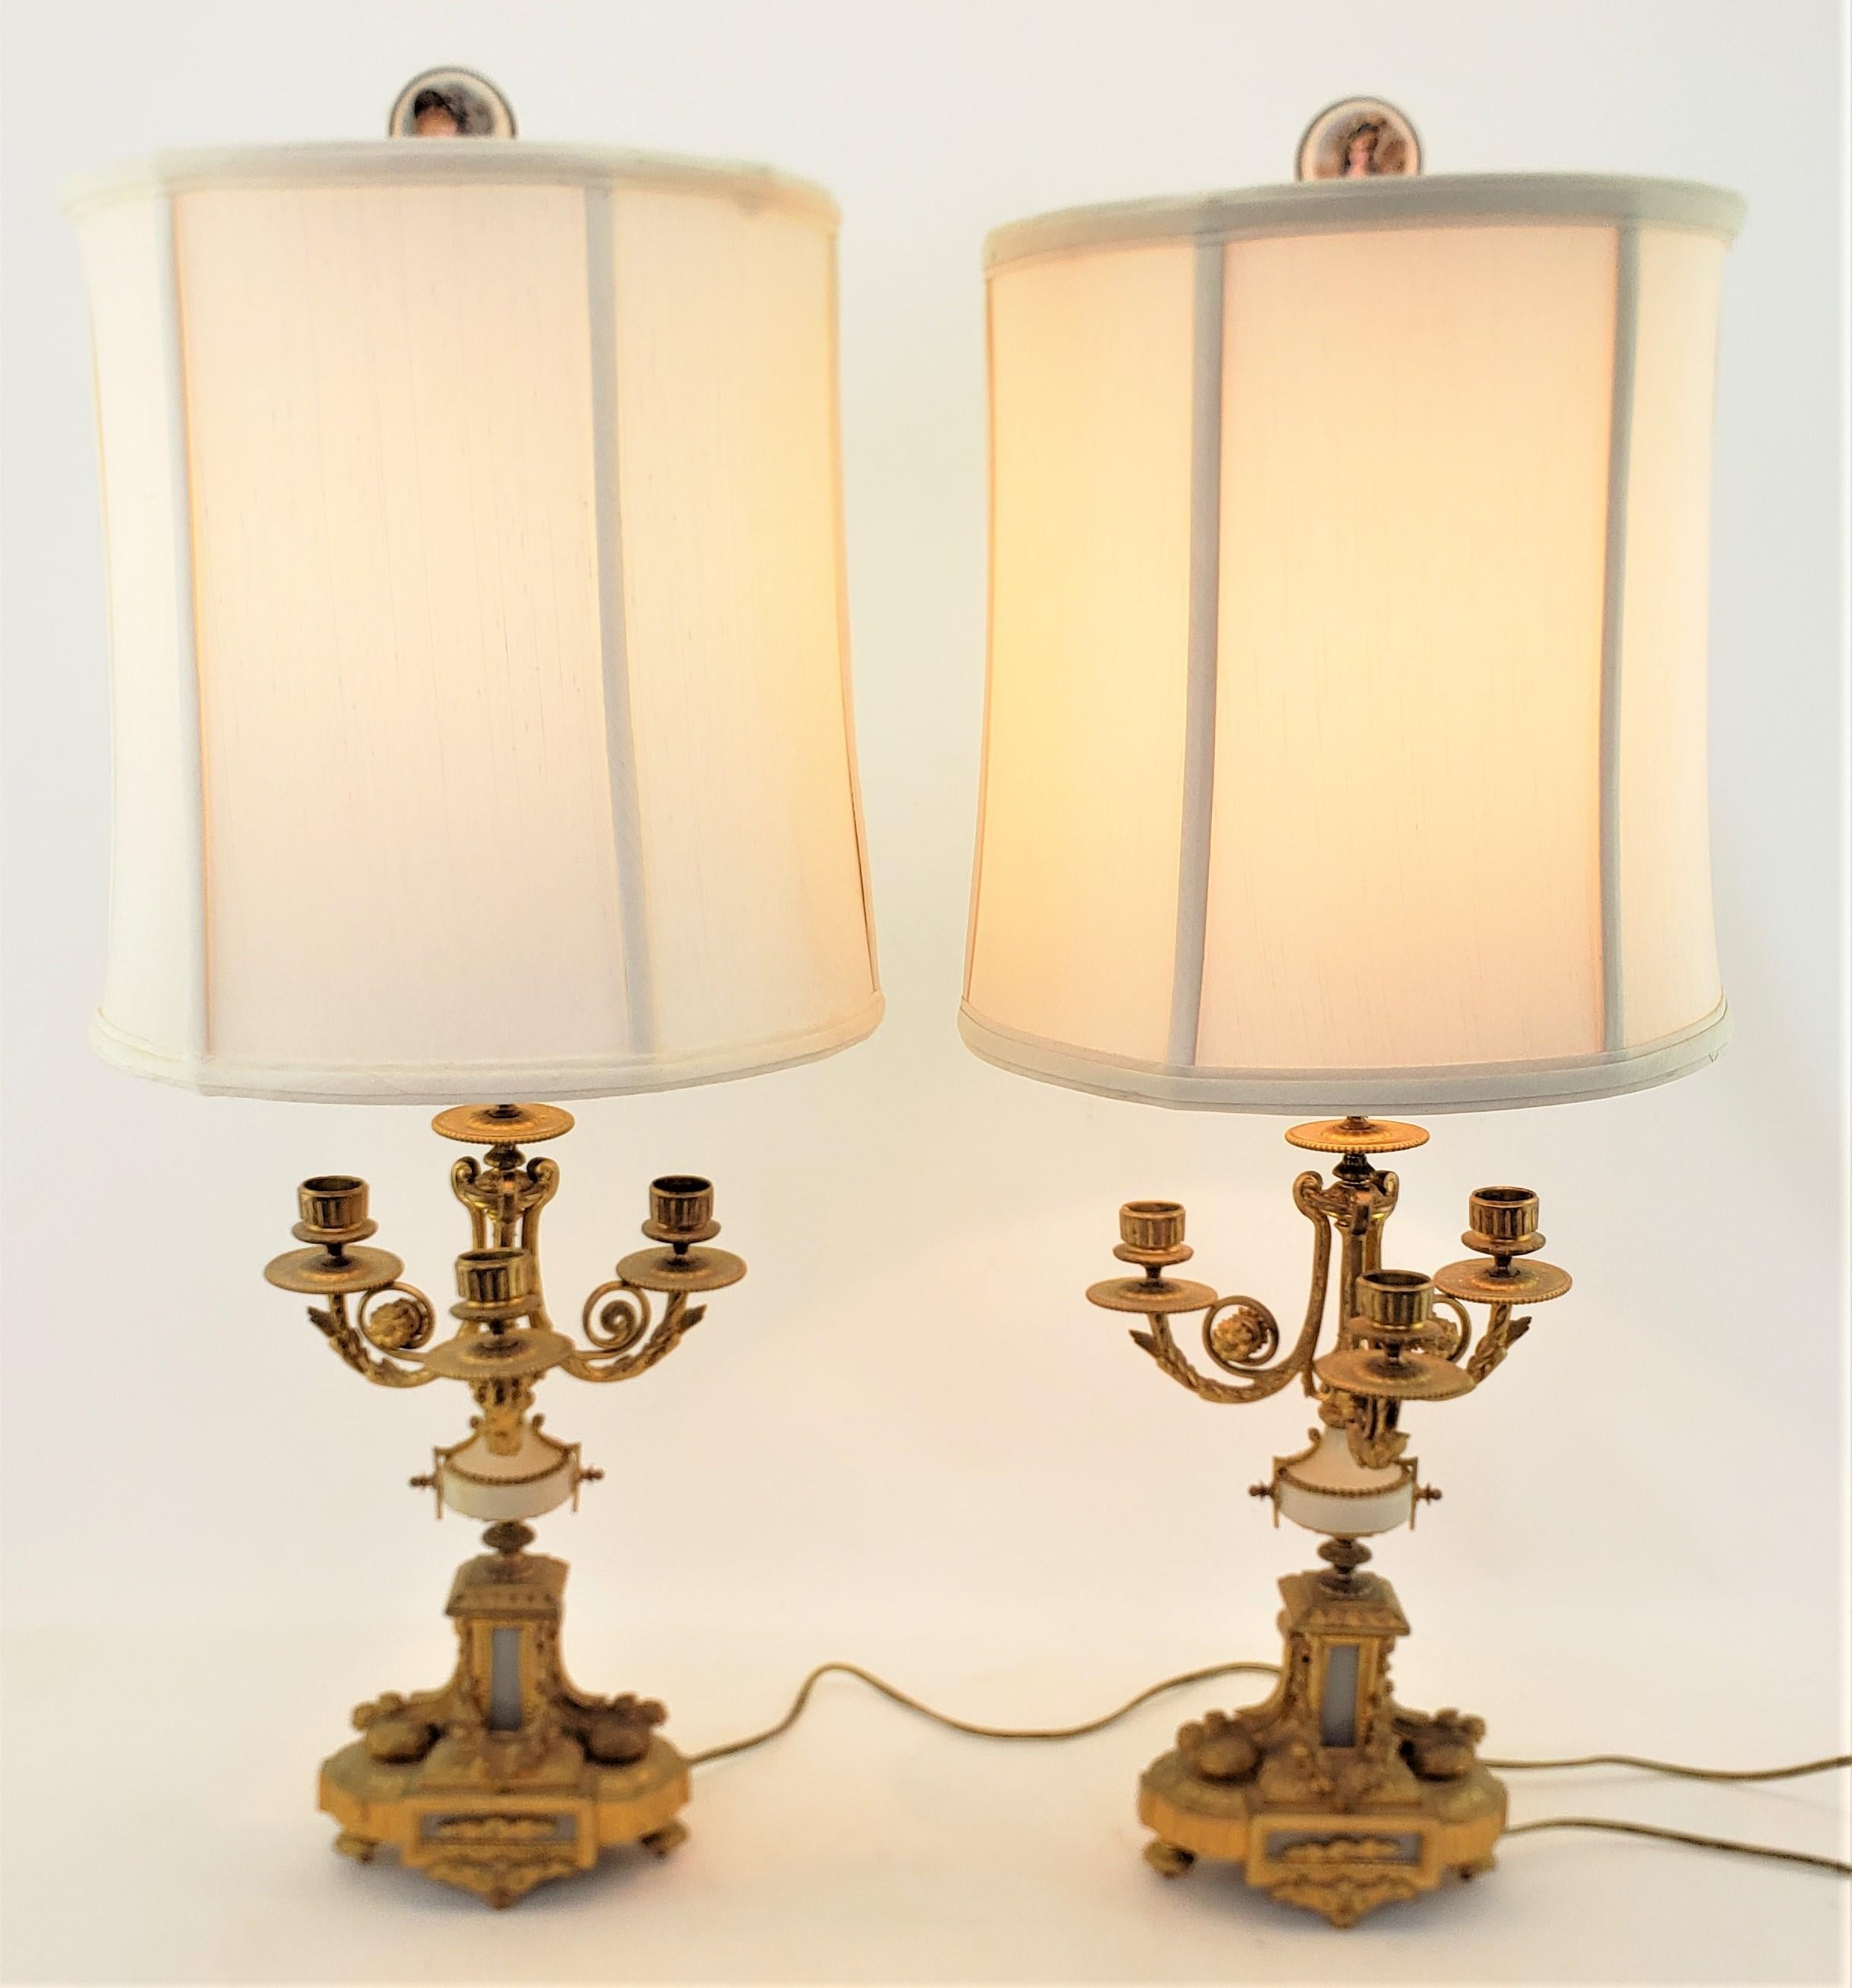 Cette paire de lampes candélabres anciennes converties n'est pas signée, mais on suppose qu'elle provient de France et date d'environ 1880. Elle est réalisée dans un style néo-Renaissance. Les candélabres sont composés de bronze coulé et doré avec